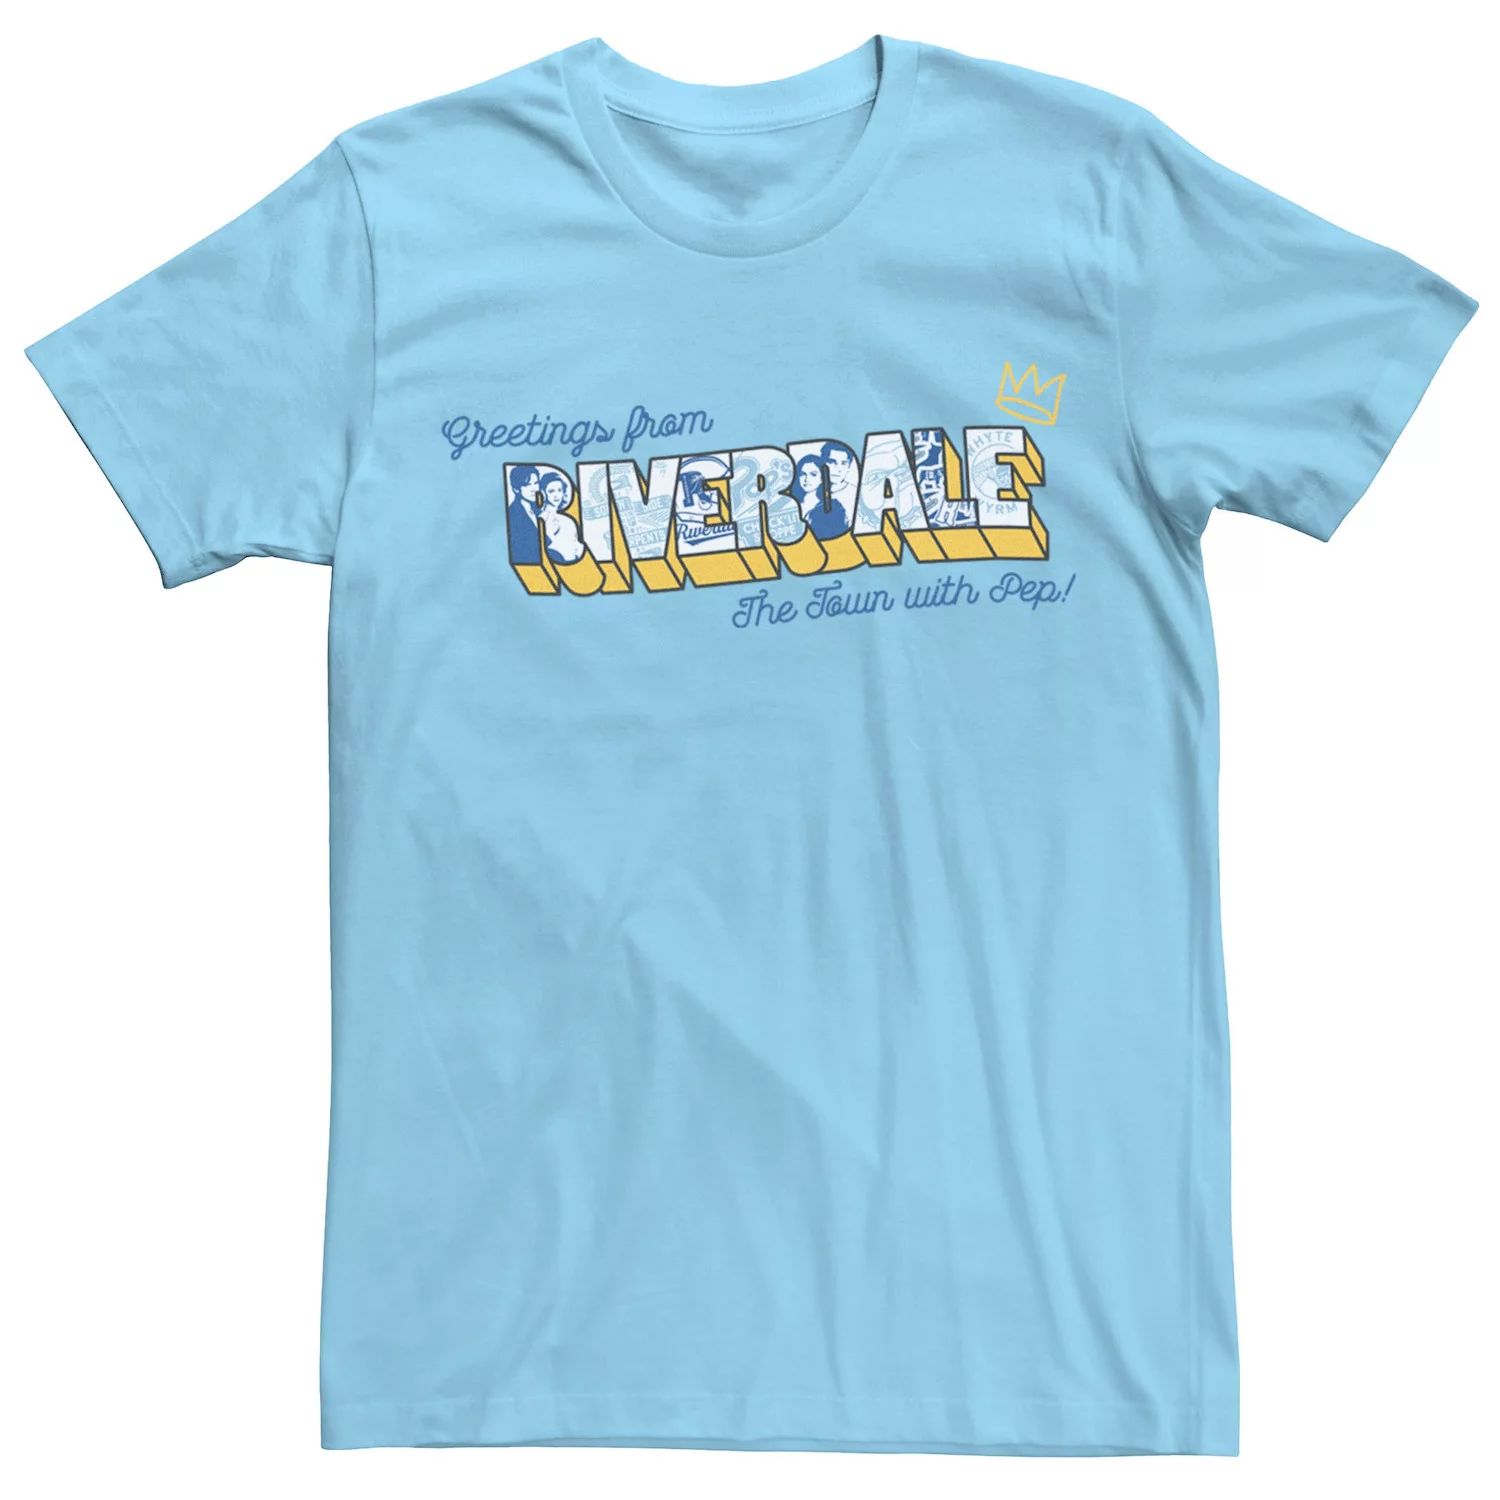 Мужская футболка с открыткой «Ривердейл» Licensed Character